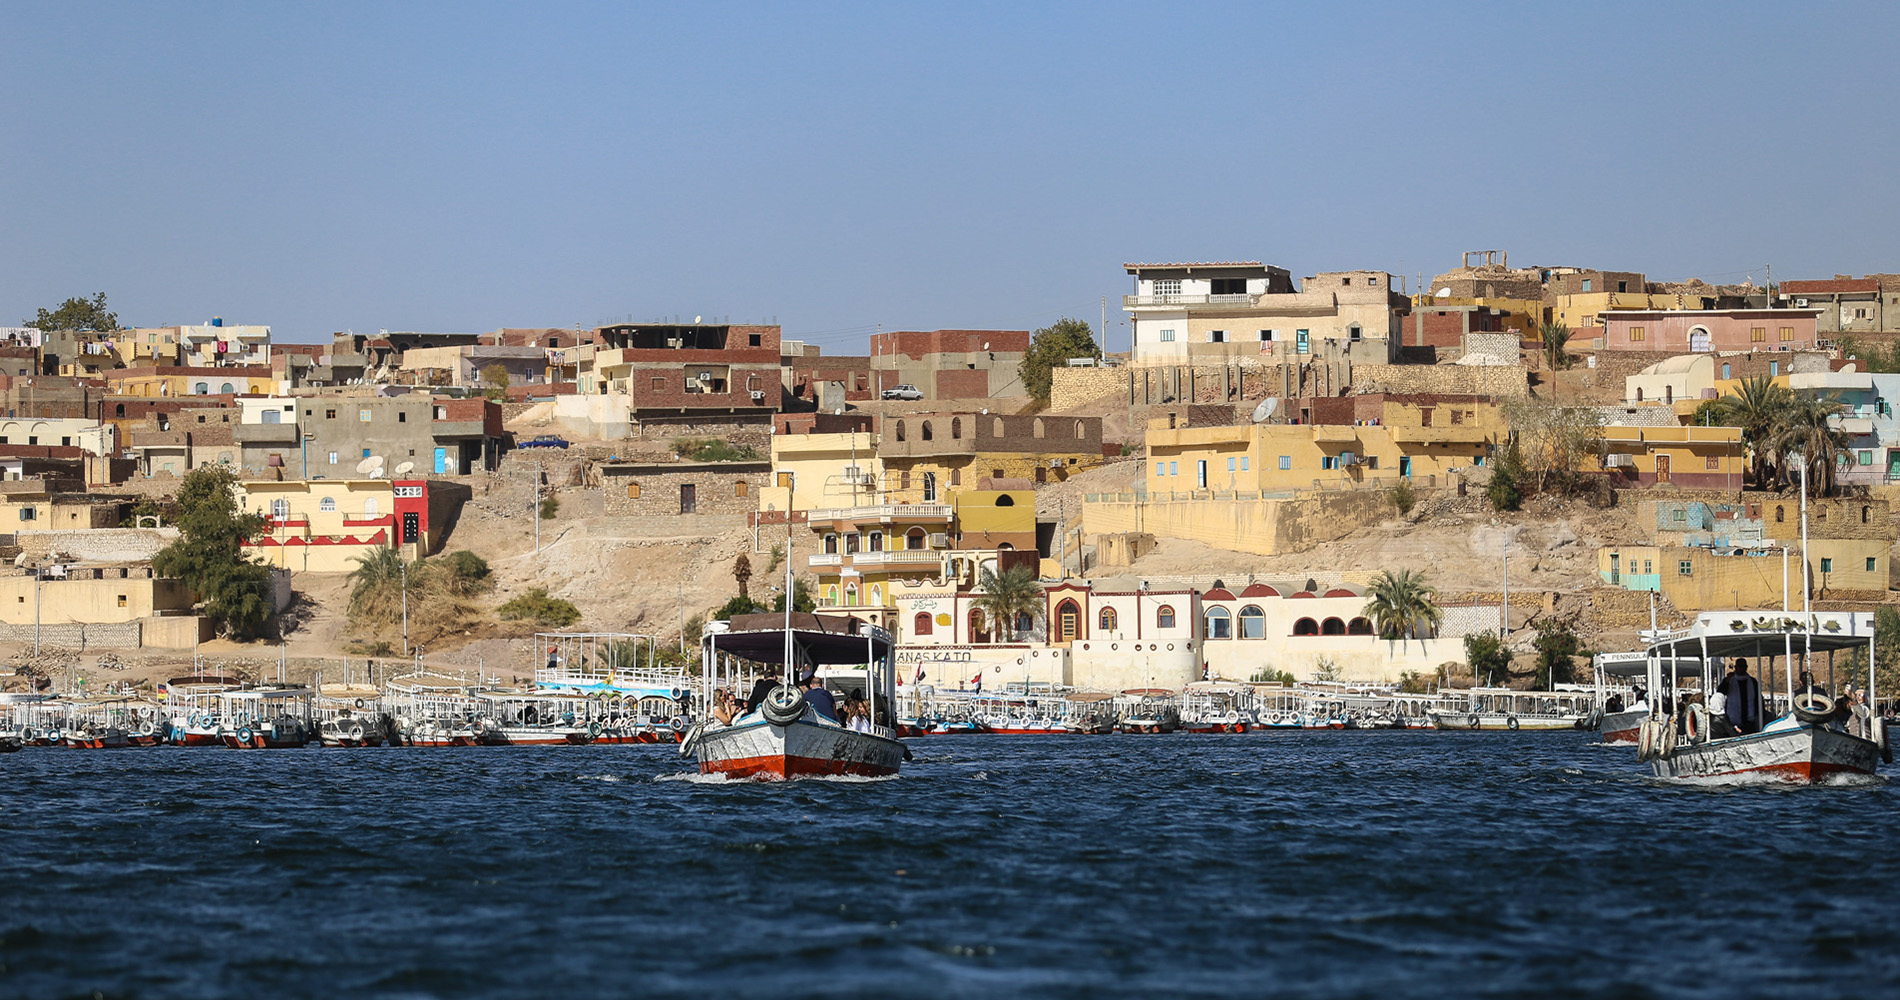 Une noria de petits bateaux mène les visiteurs sur l’île où a été reconstruit Philae